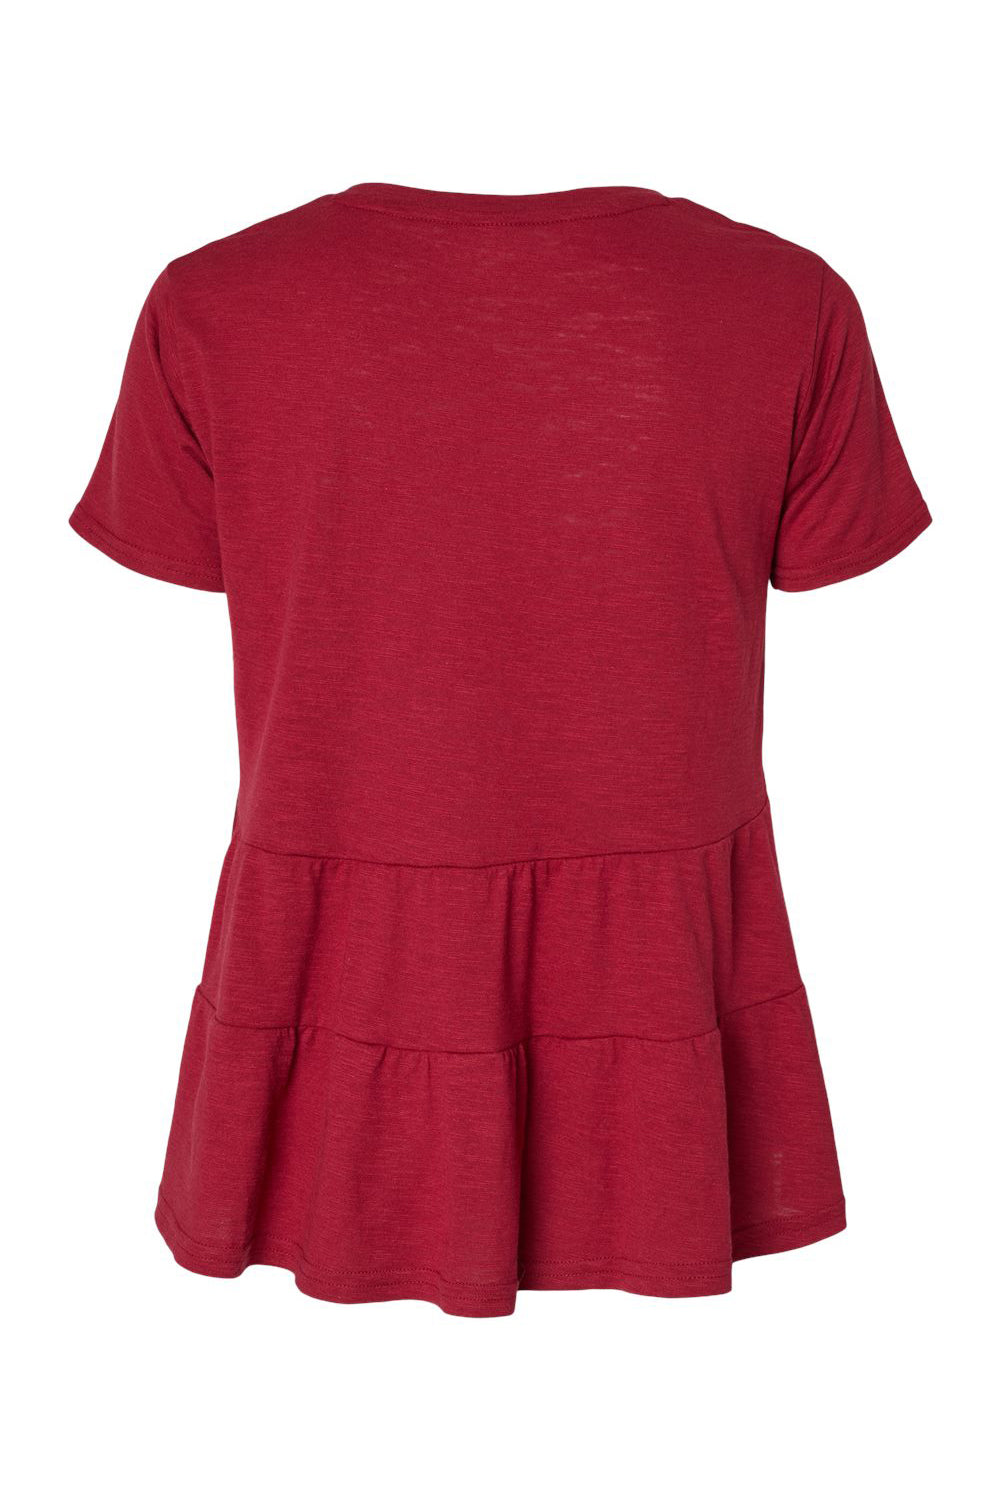 Boxercraft BW2401 Womens Willow Short Sleeve Crewneck T-Shirt Garnet Red Flat Back